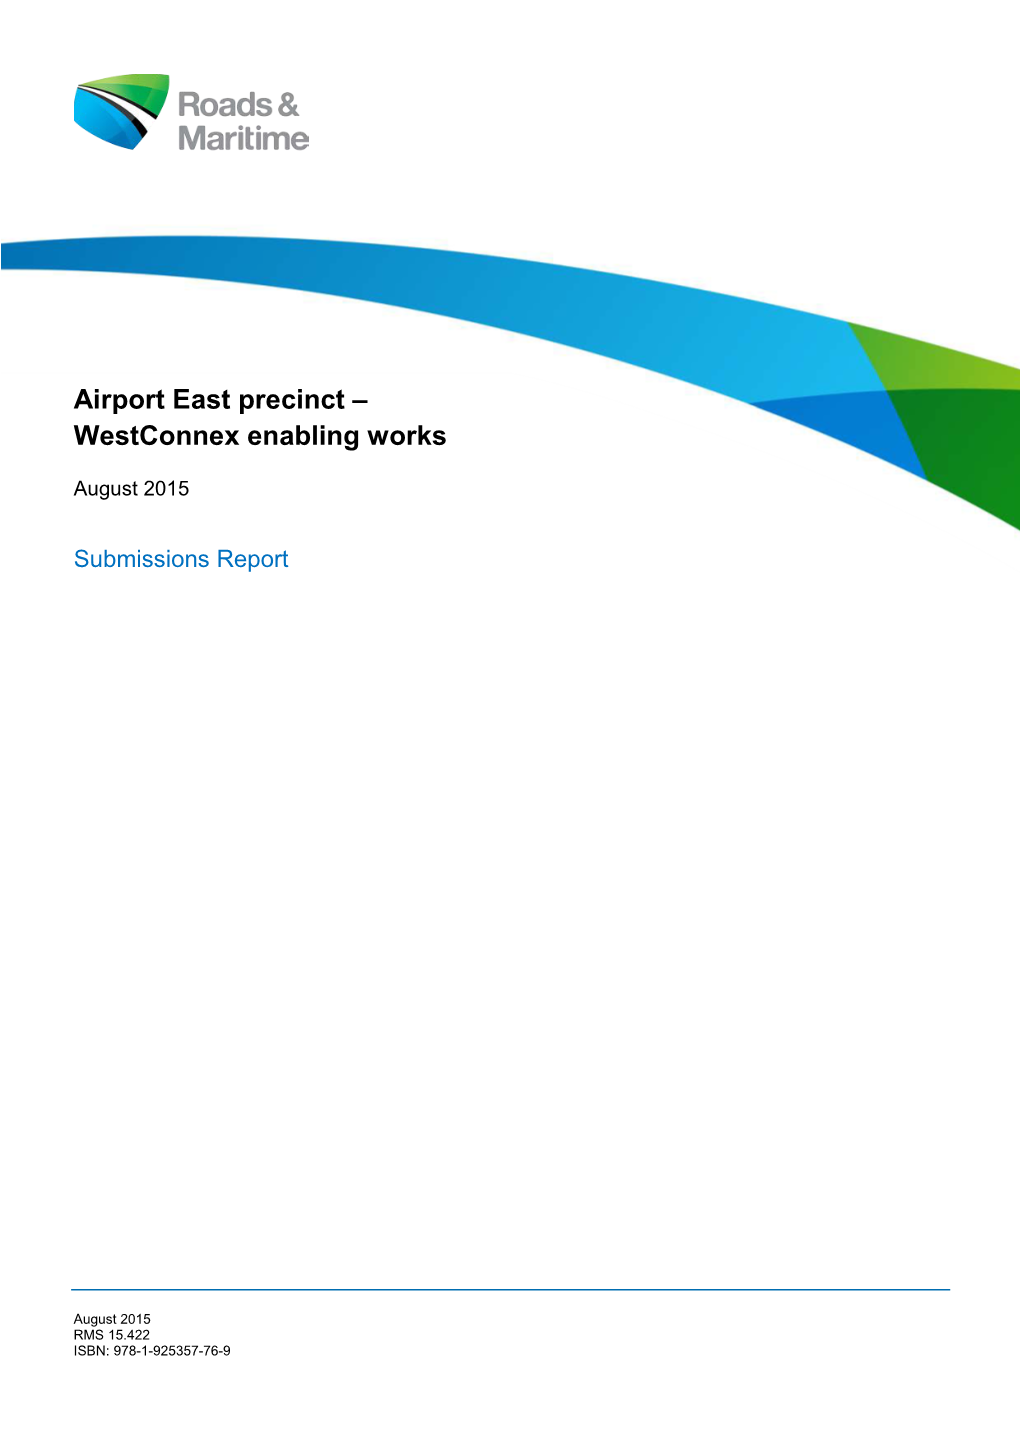 Airport East Precinct – Westconnex Enabling Works